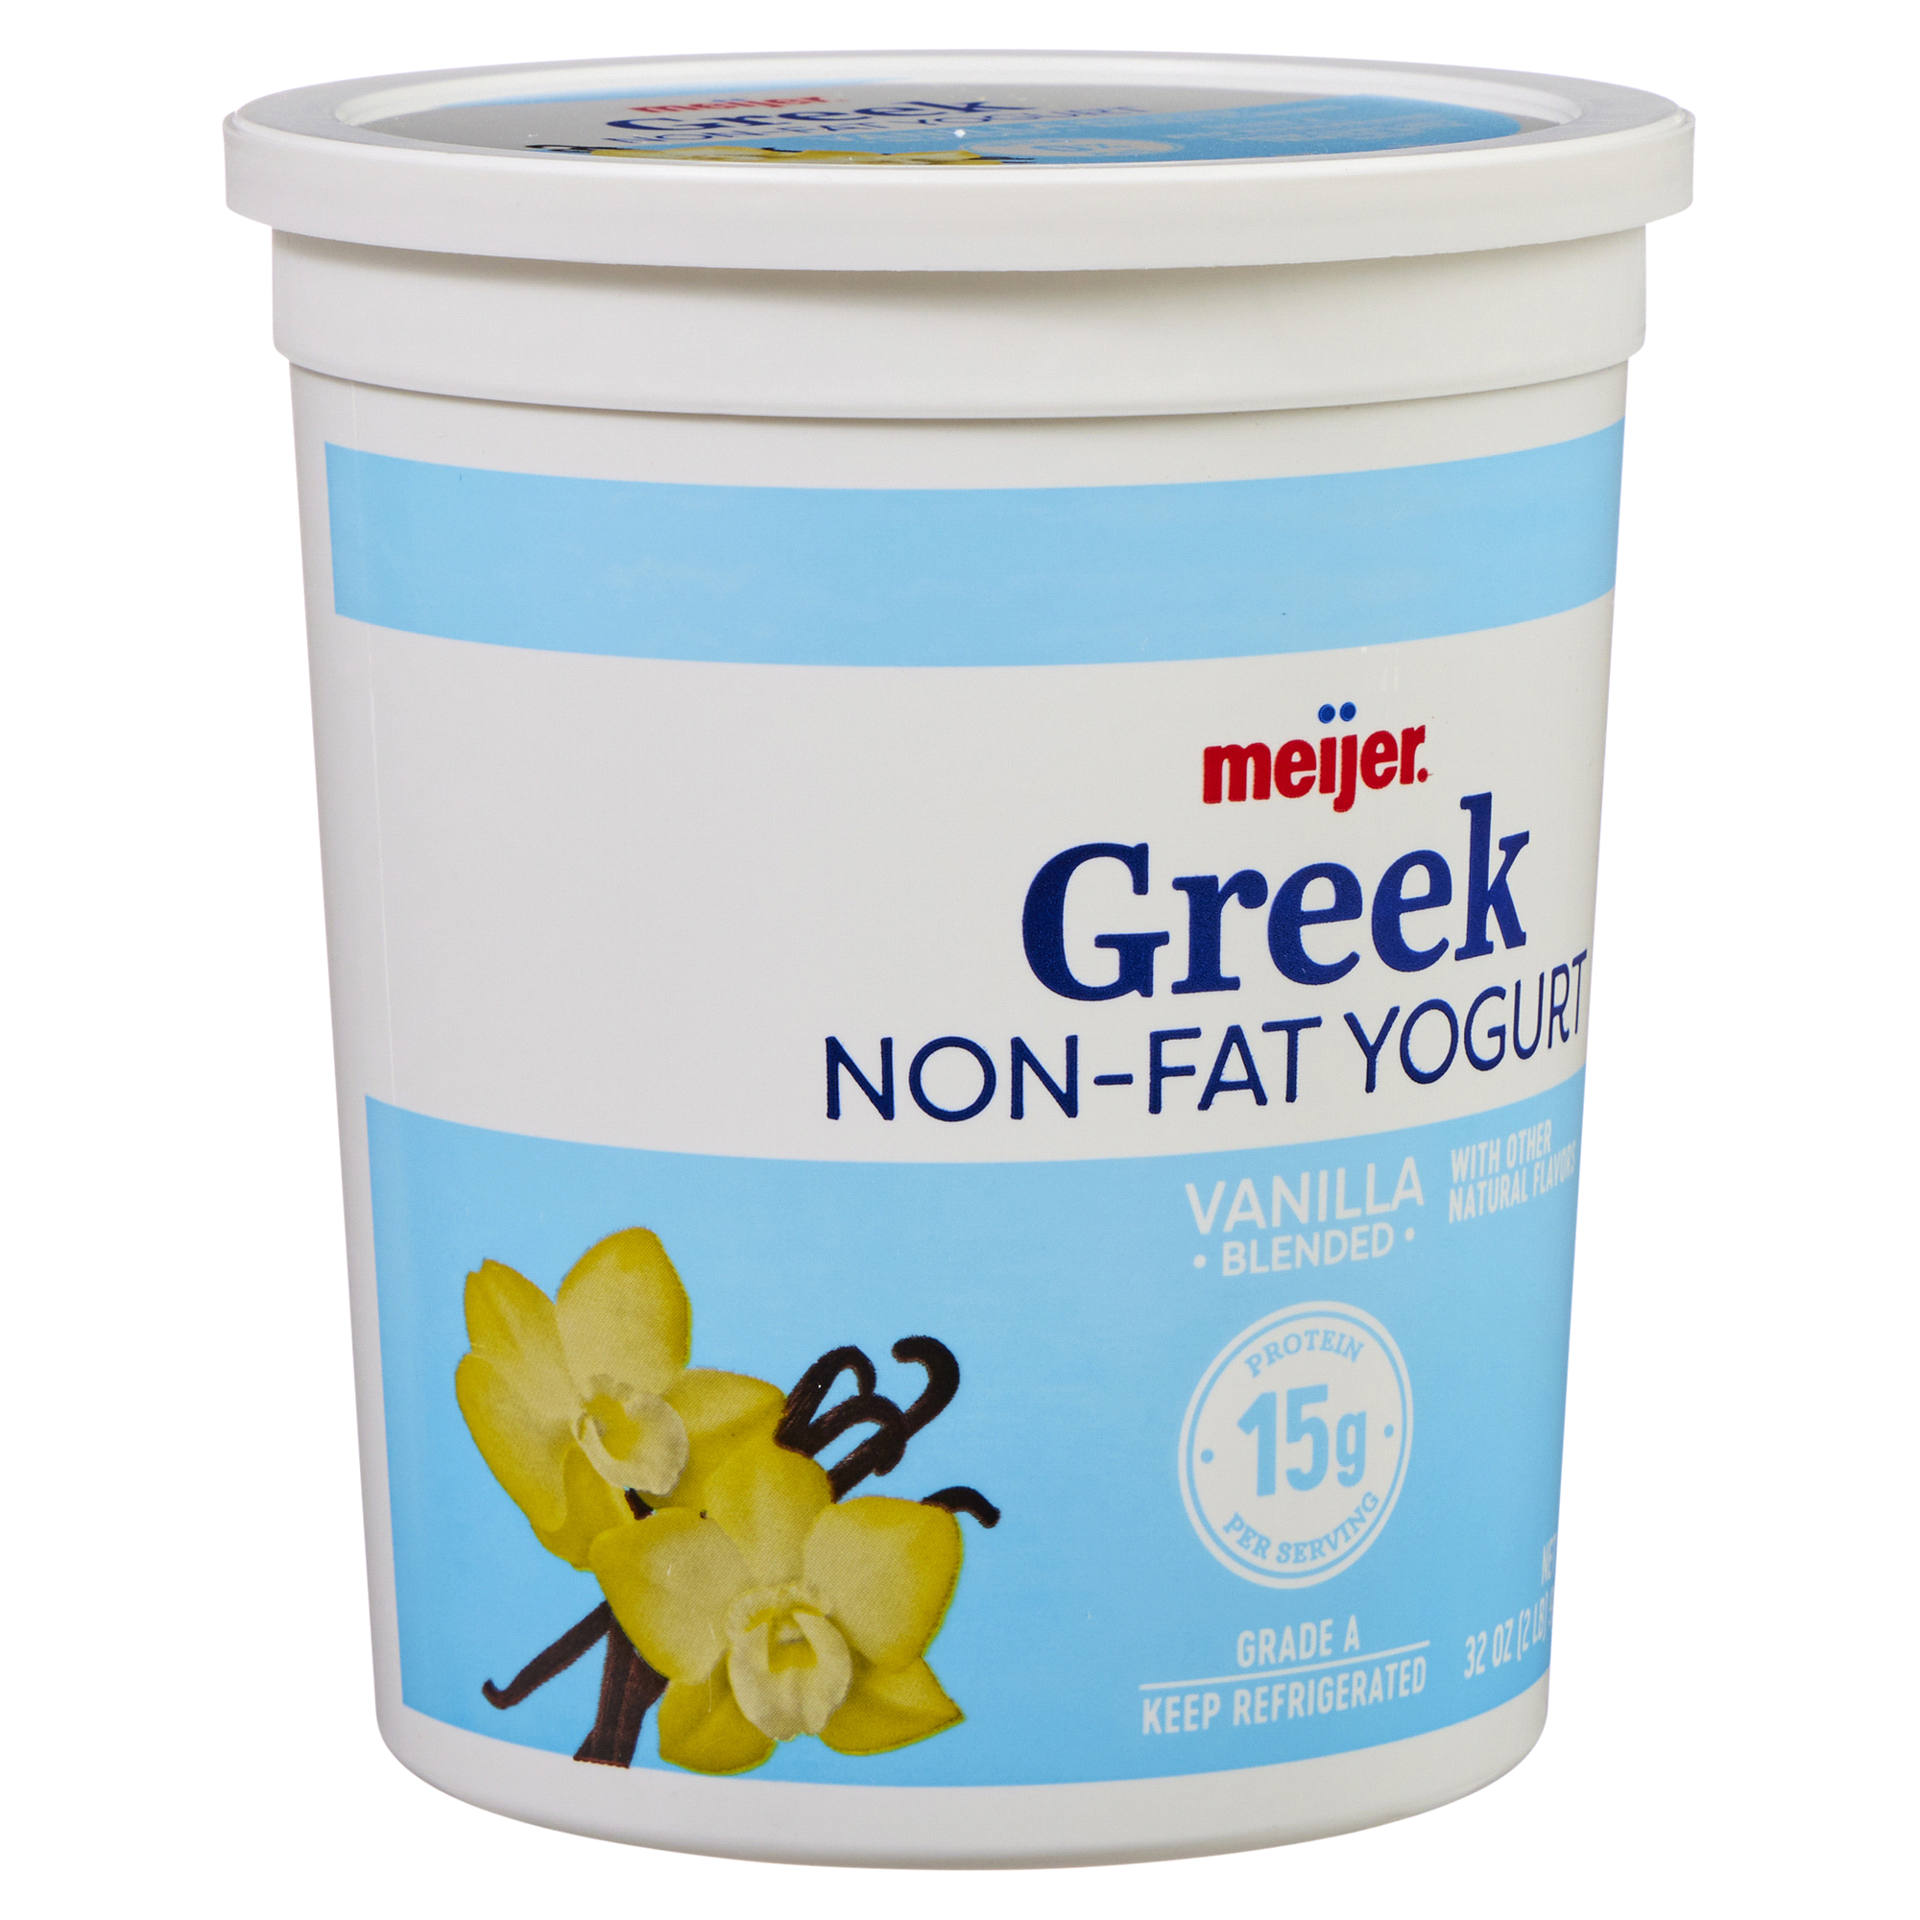 slide 23 of 29, Meijer Greek Nonfat Yogurt, Vanilla, 32 oz